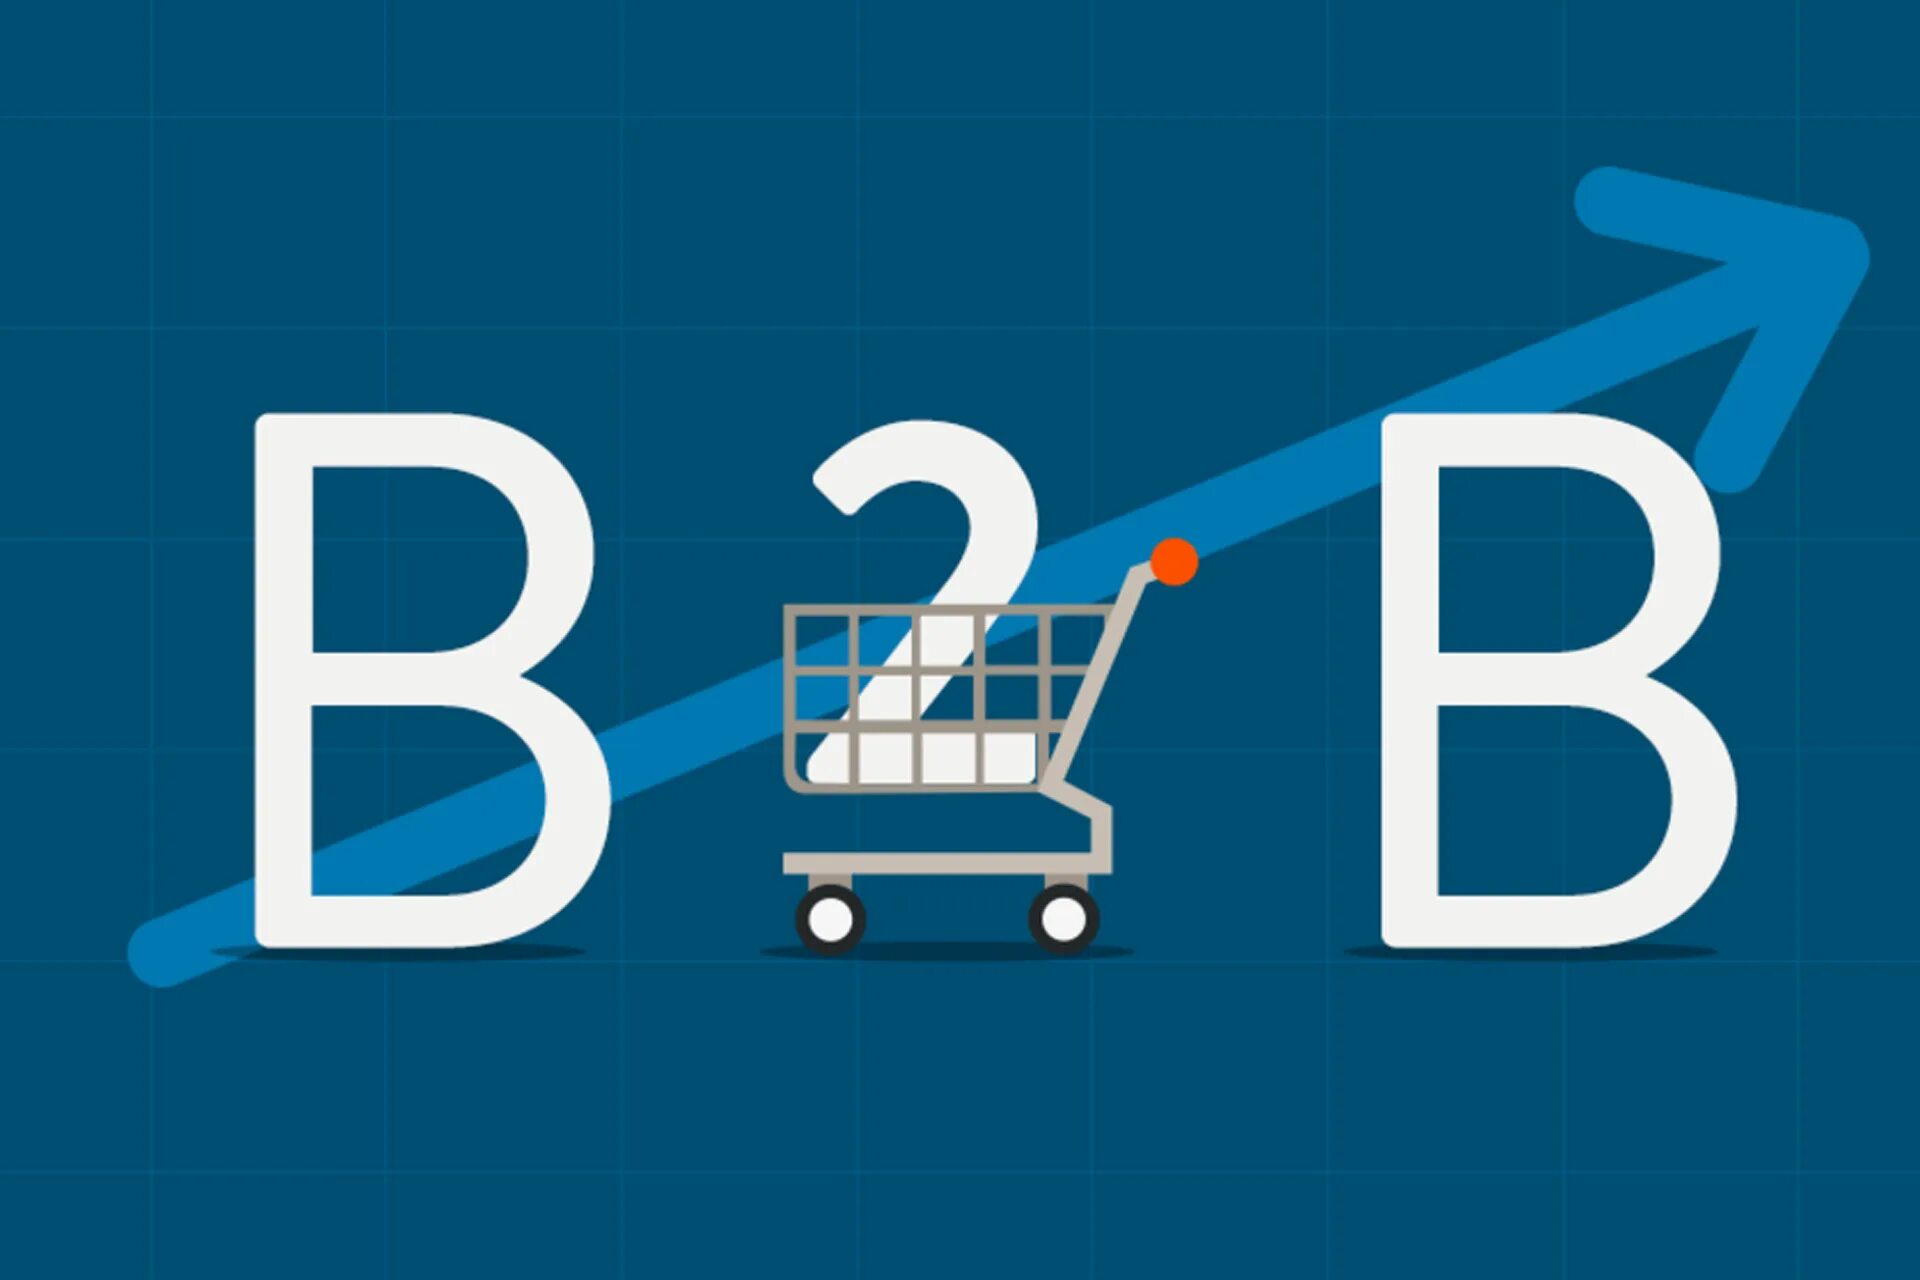 B2 b 5 b2 b 8. B2b что это. Электронная коммерция b2b. B2b картинка. B2b бизнес.